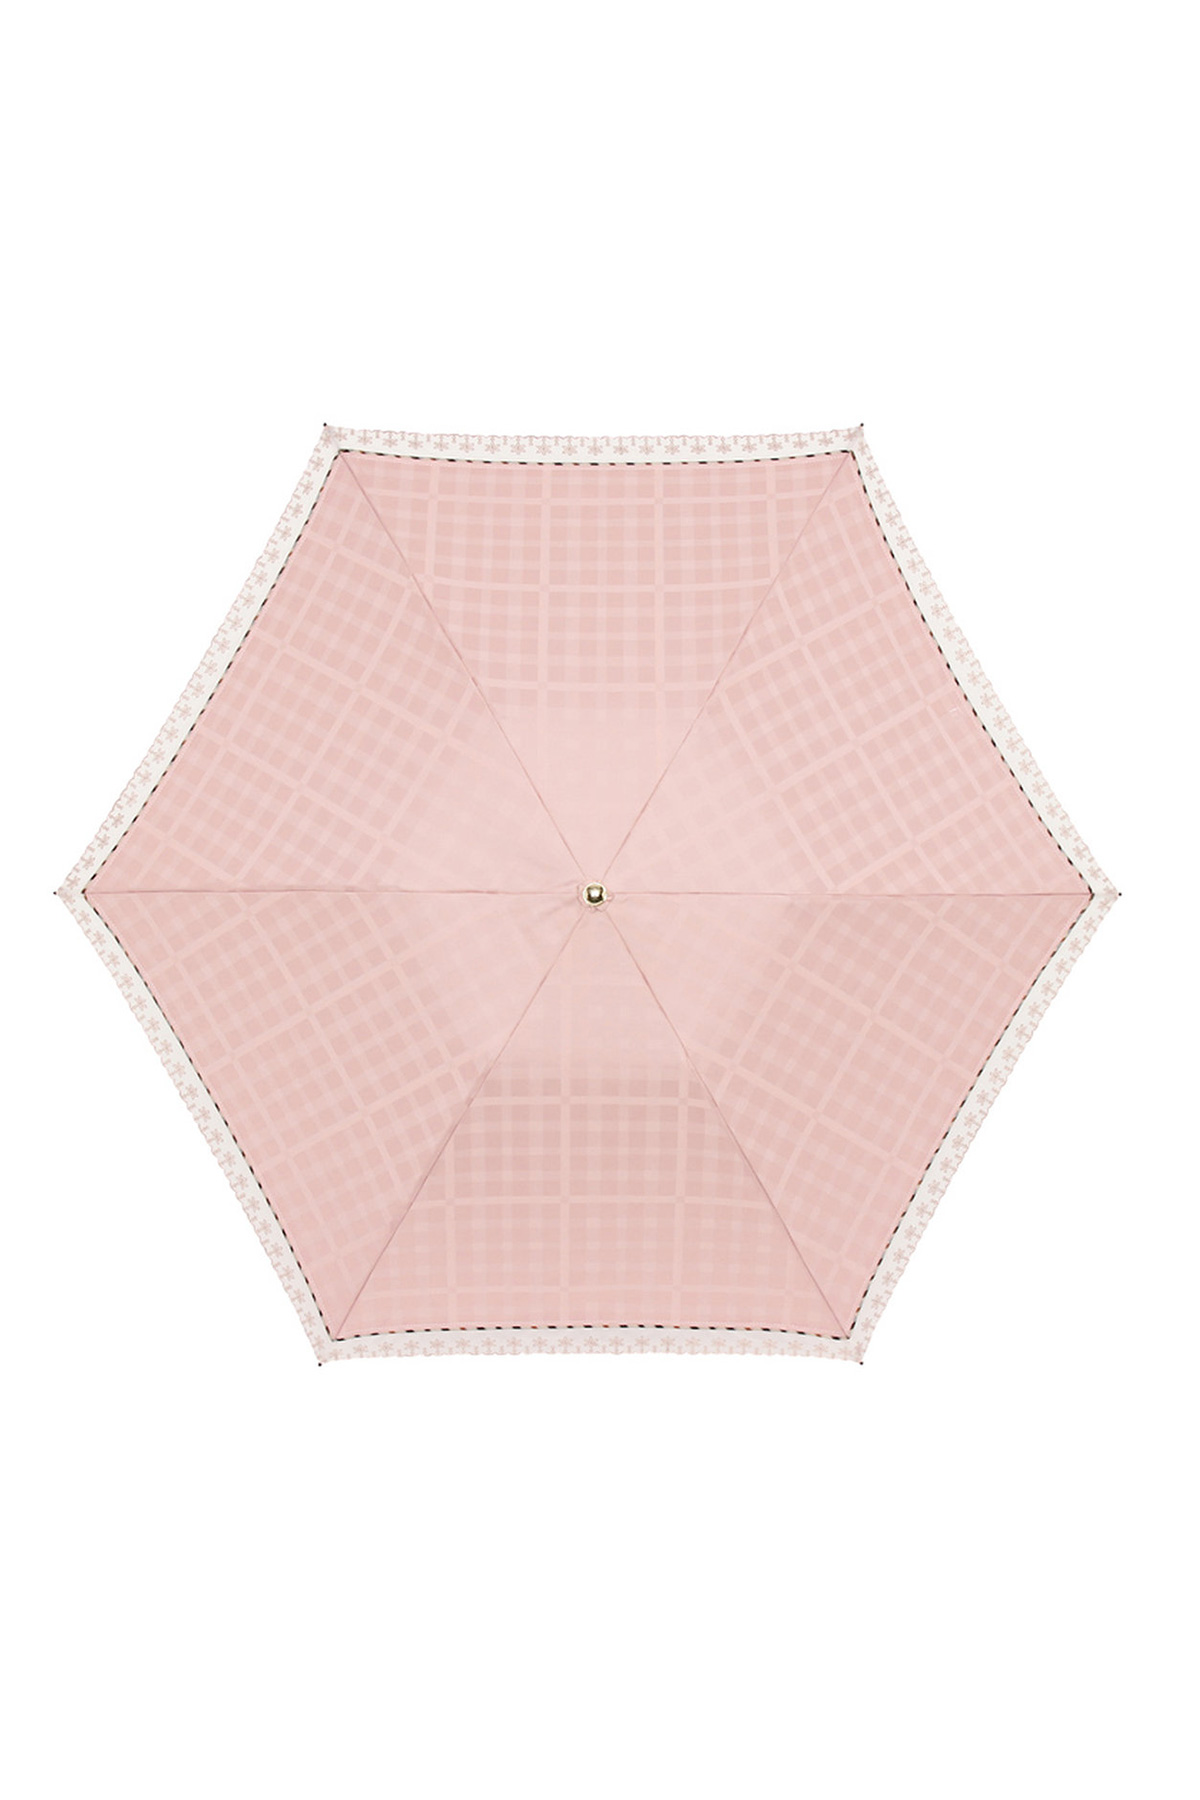 【日傘】ミニ折りたたみ傘オーガンジーレース 詳細画像 5